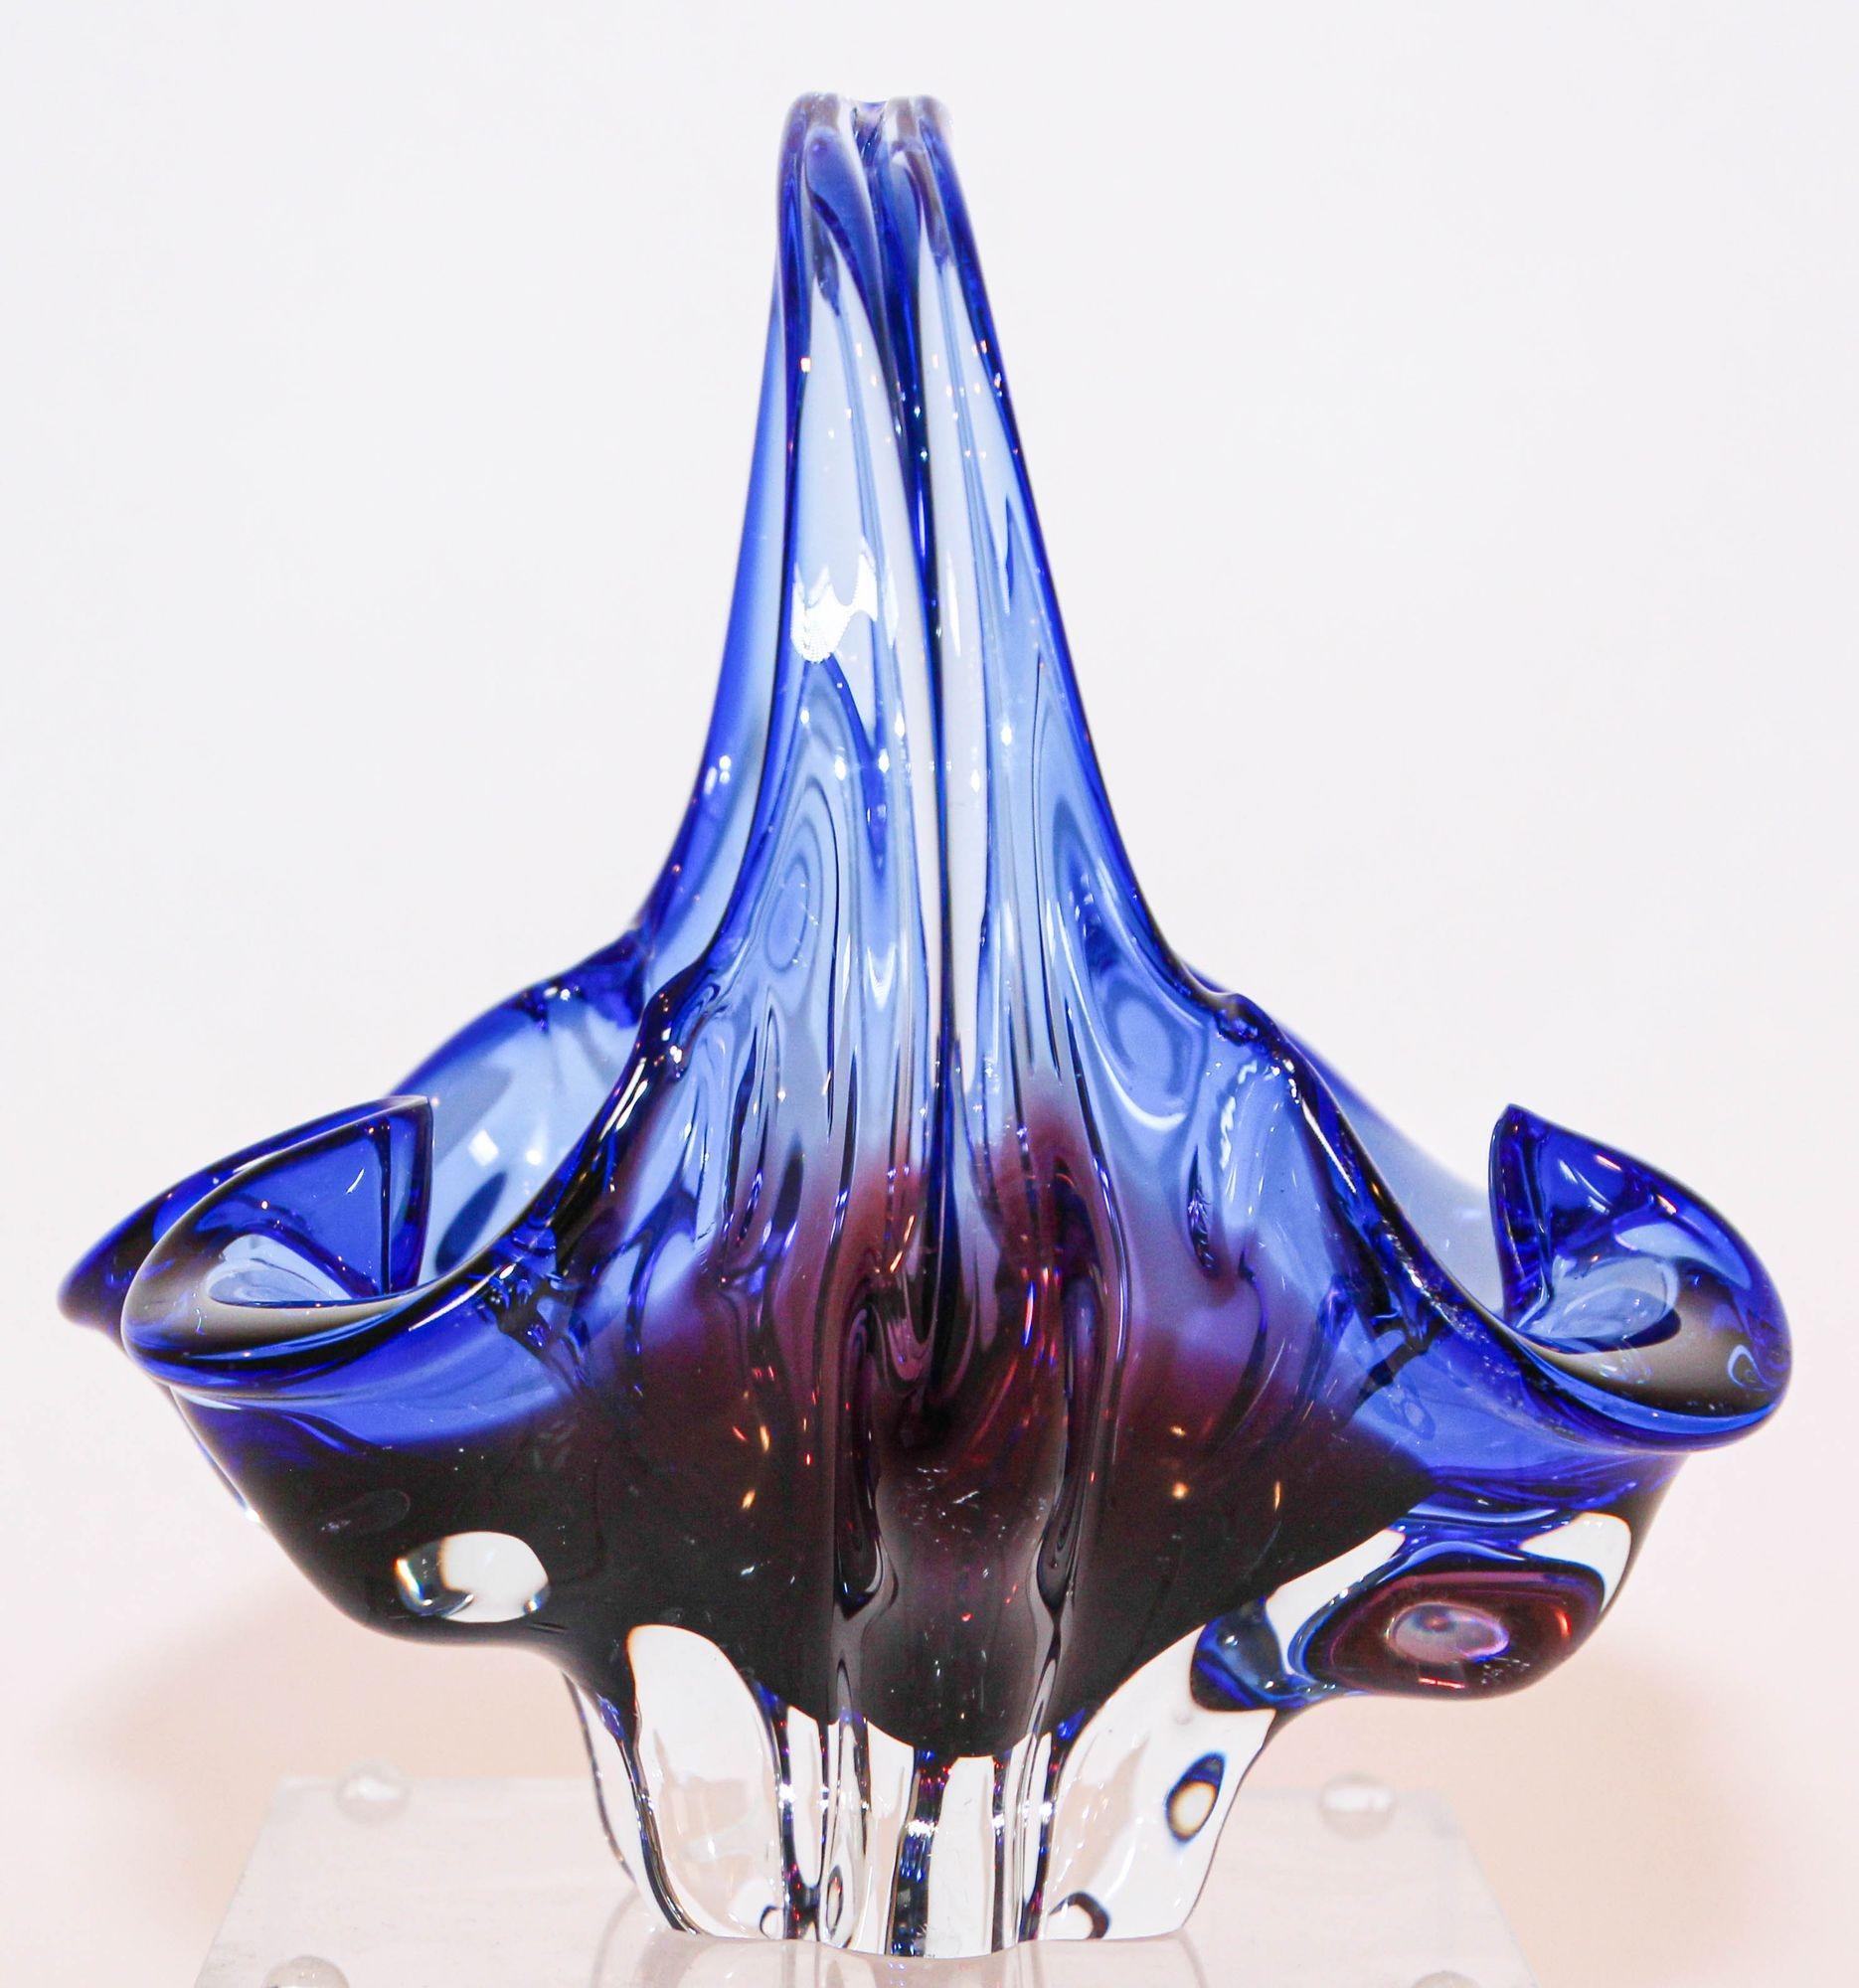 Murano kobaltblauer Kunstglaskorb,
Murano-Glasschale Italien, 1970er Jahre.
Ein erstaunliches Objekt aus dickem Kunstglas im Murano-Stil in einem ungewöhnlichen Design in einer schönen Farbkombination aus Blau und Burgunderrot.
Ein äußerst